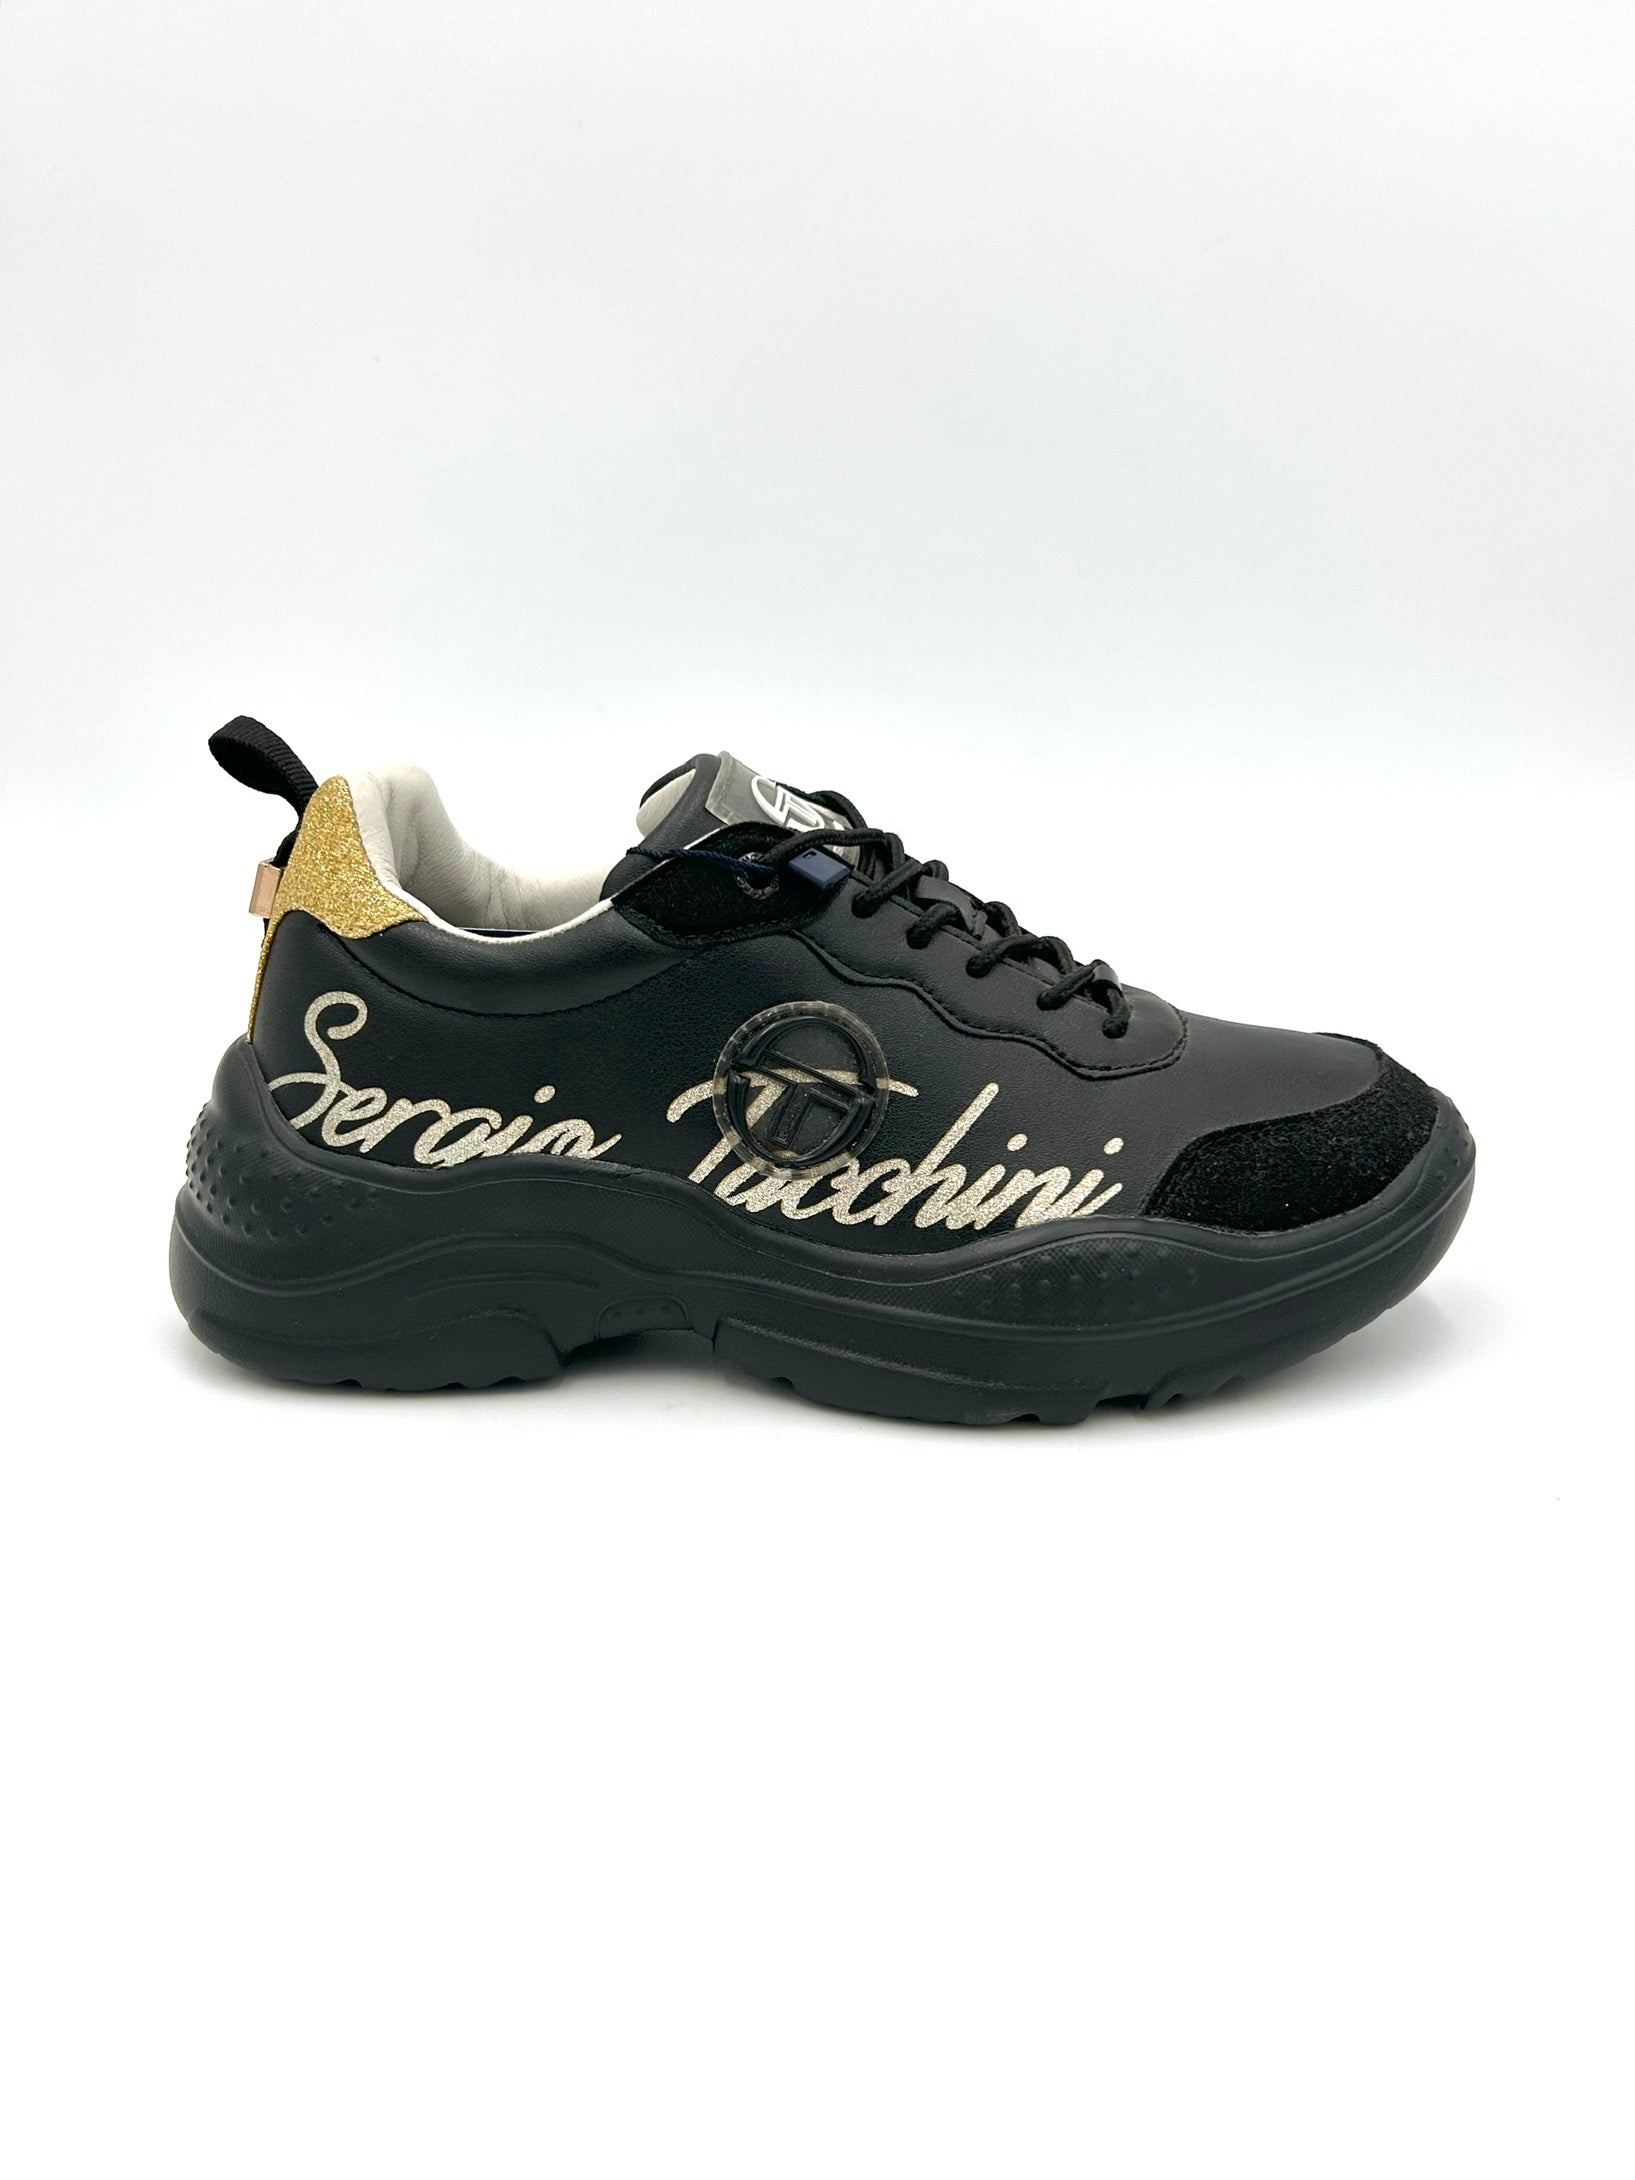 Sergio Tacchini Sneakers black and gold - nero e oro - Sergio Tacchini